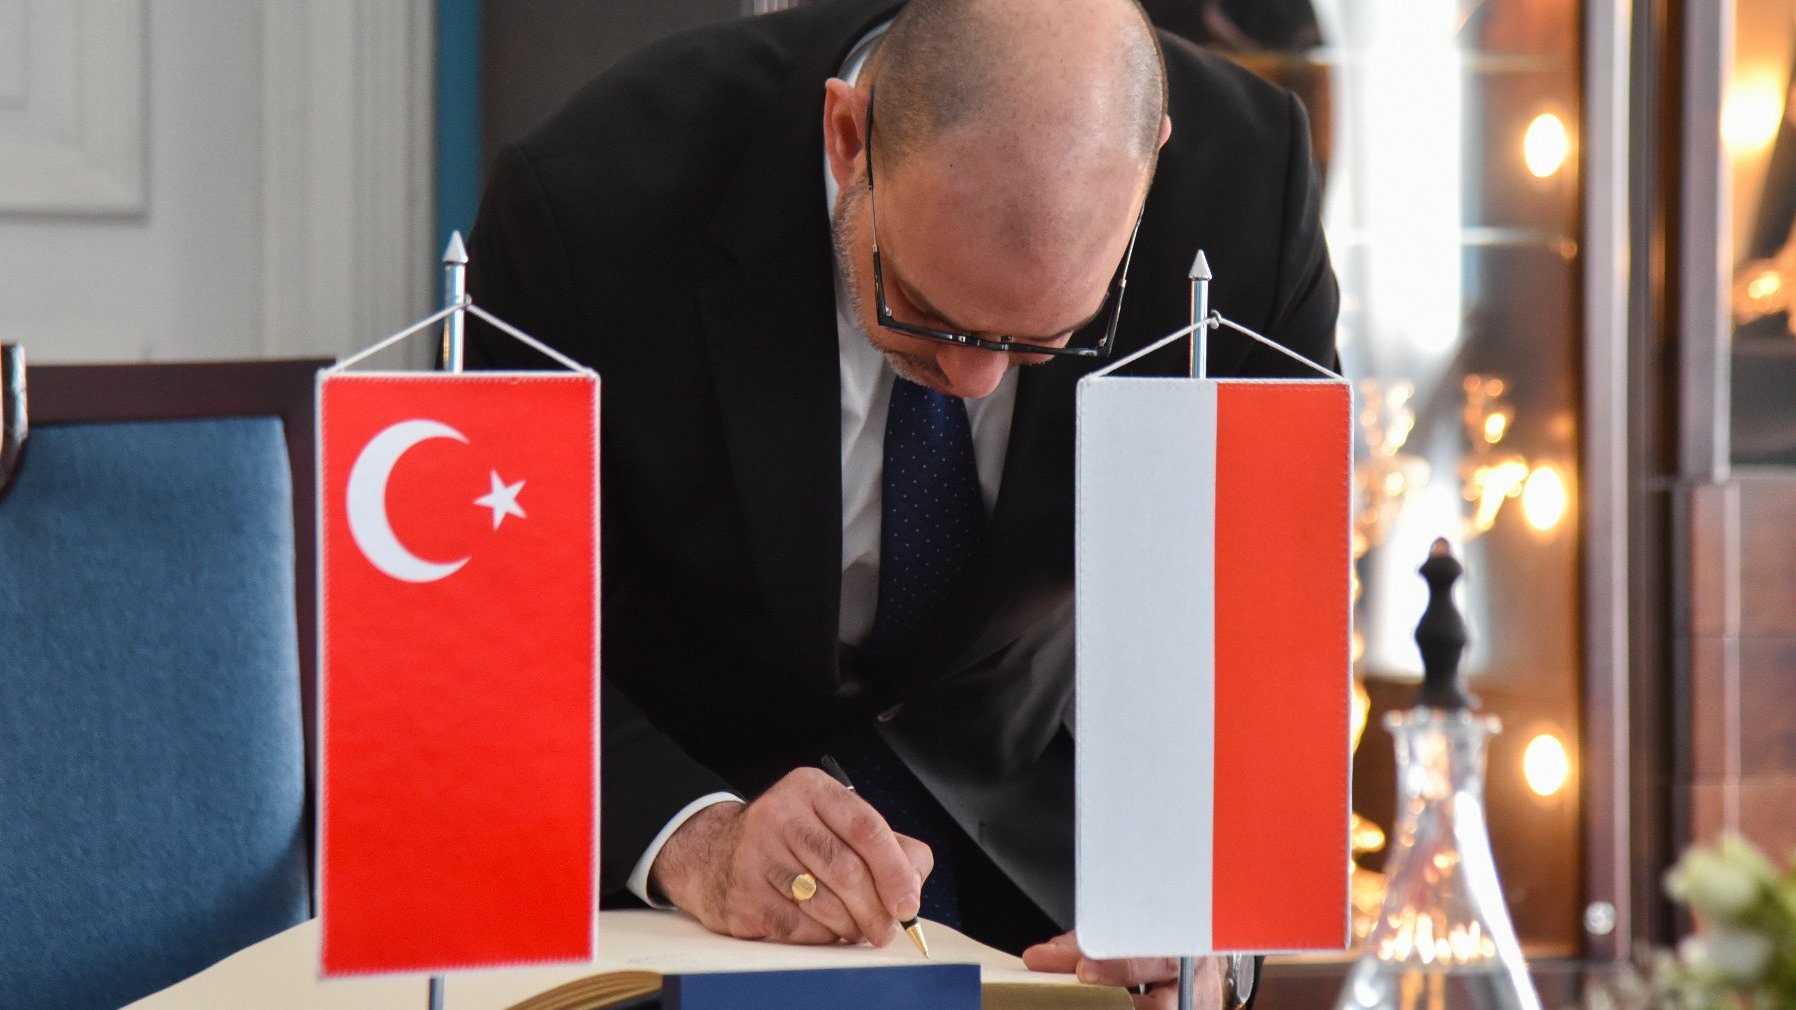 Na zdjeciu mężczyzna wpisujący się do księgi pamiątkowej, obok niej stoją dwie flagi: polska i turecka